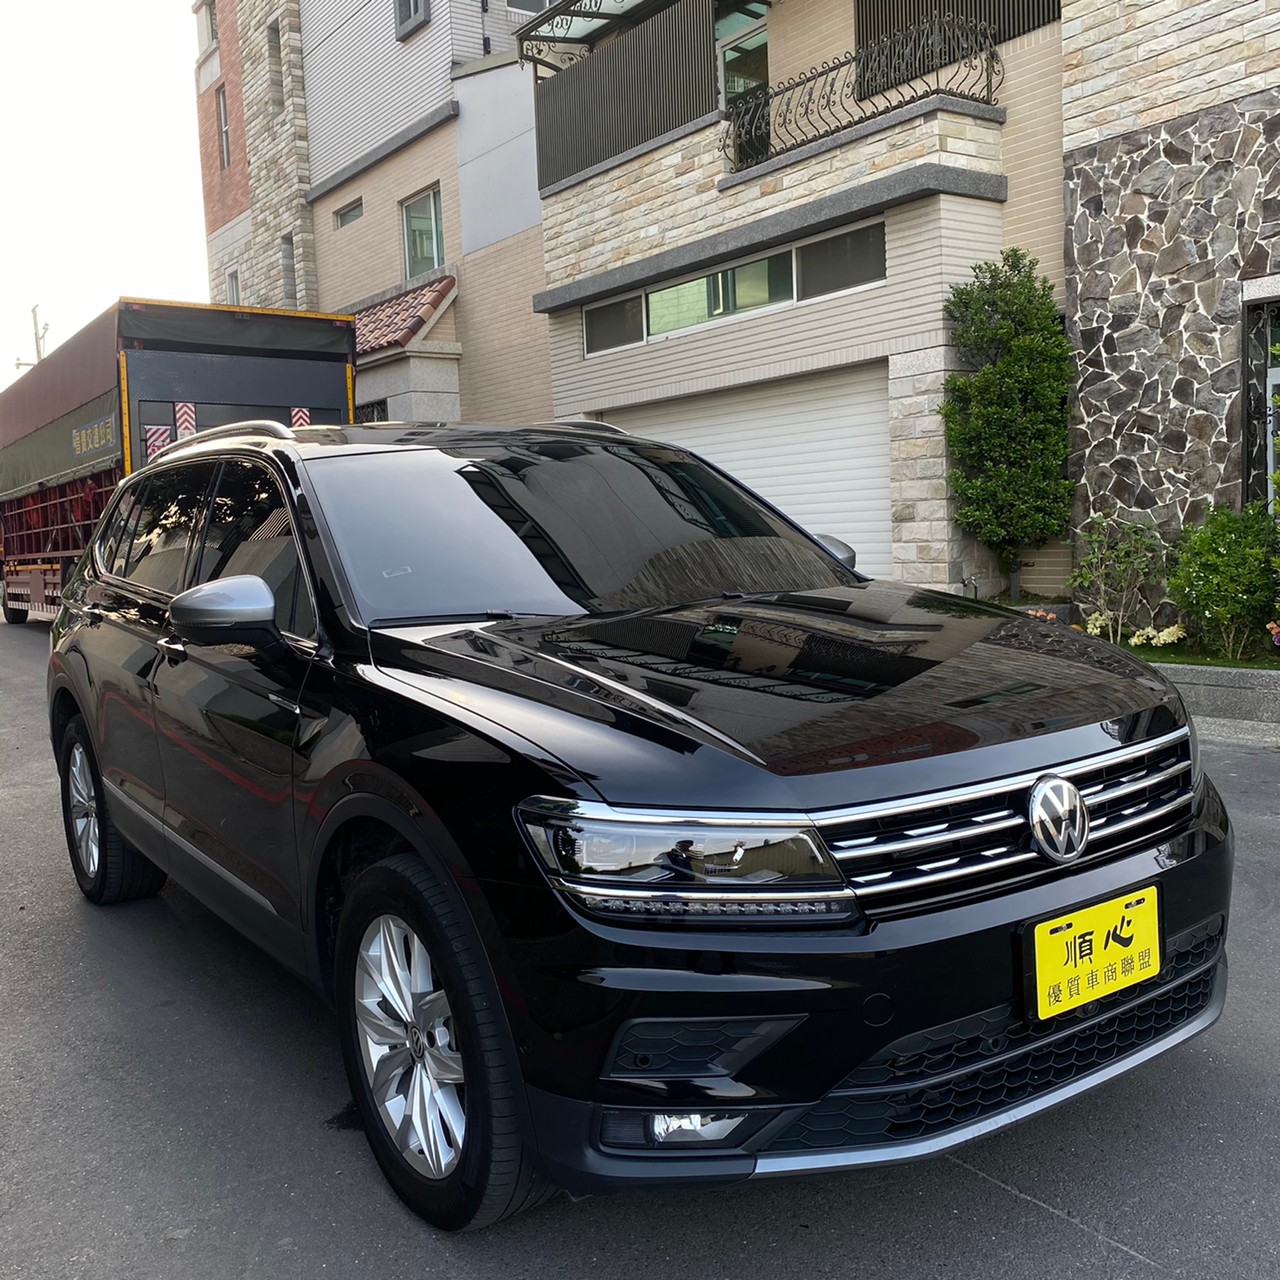 台南市三立國際汽車有限公司中古車的價格 Findcar 找車網